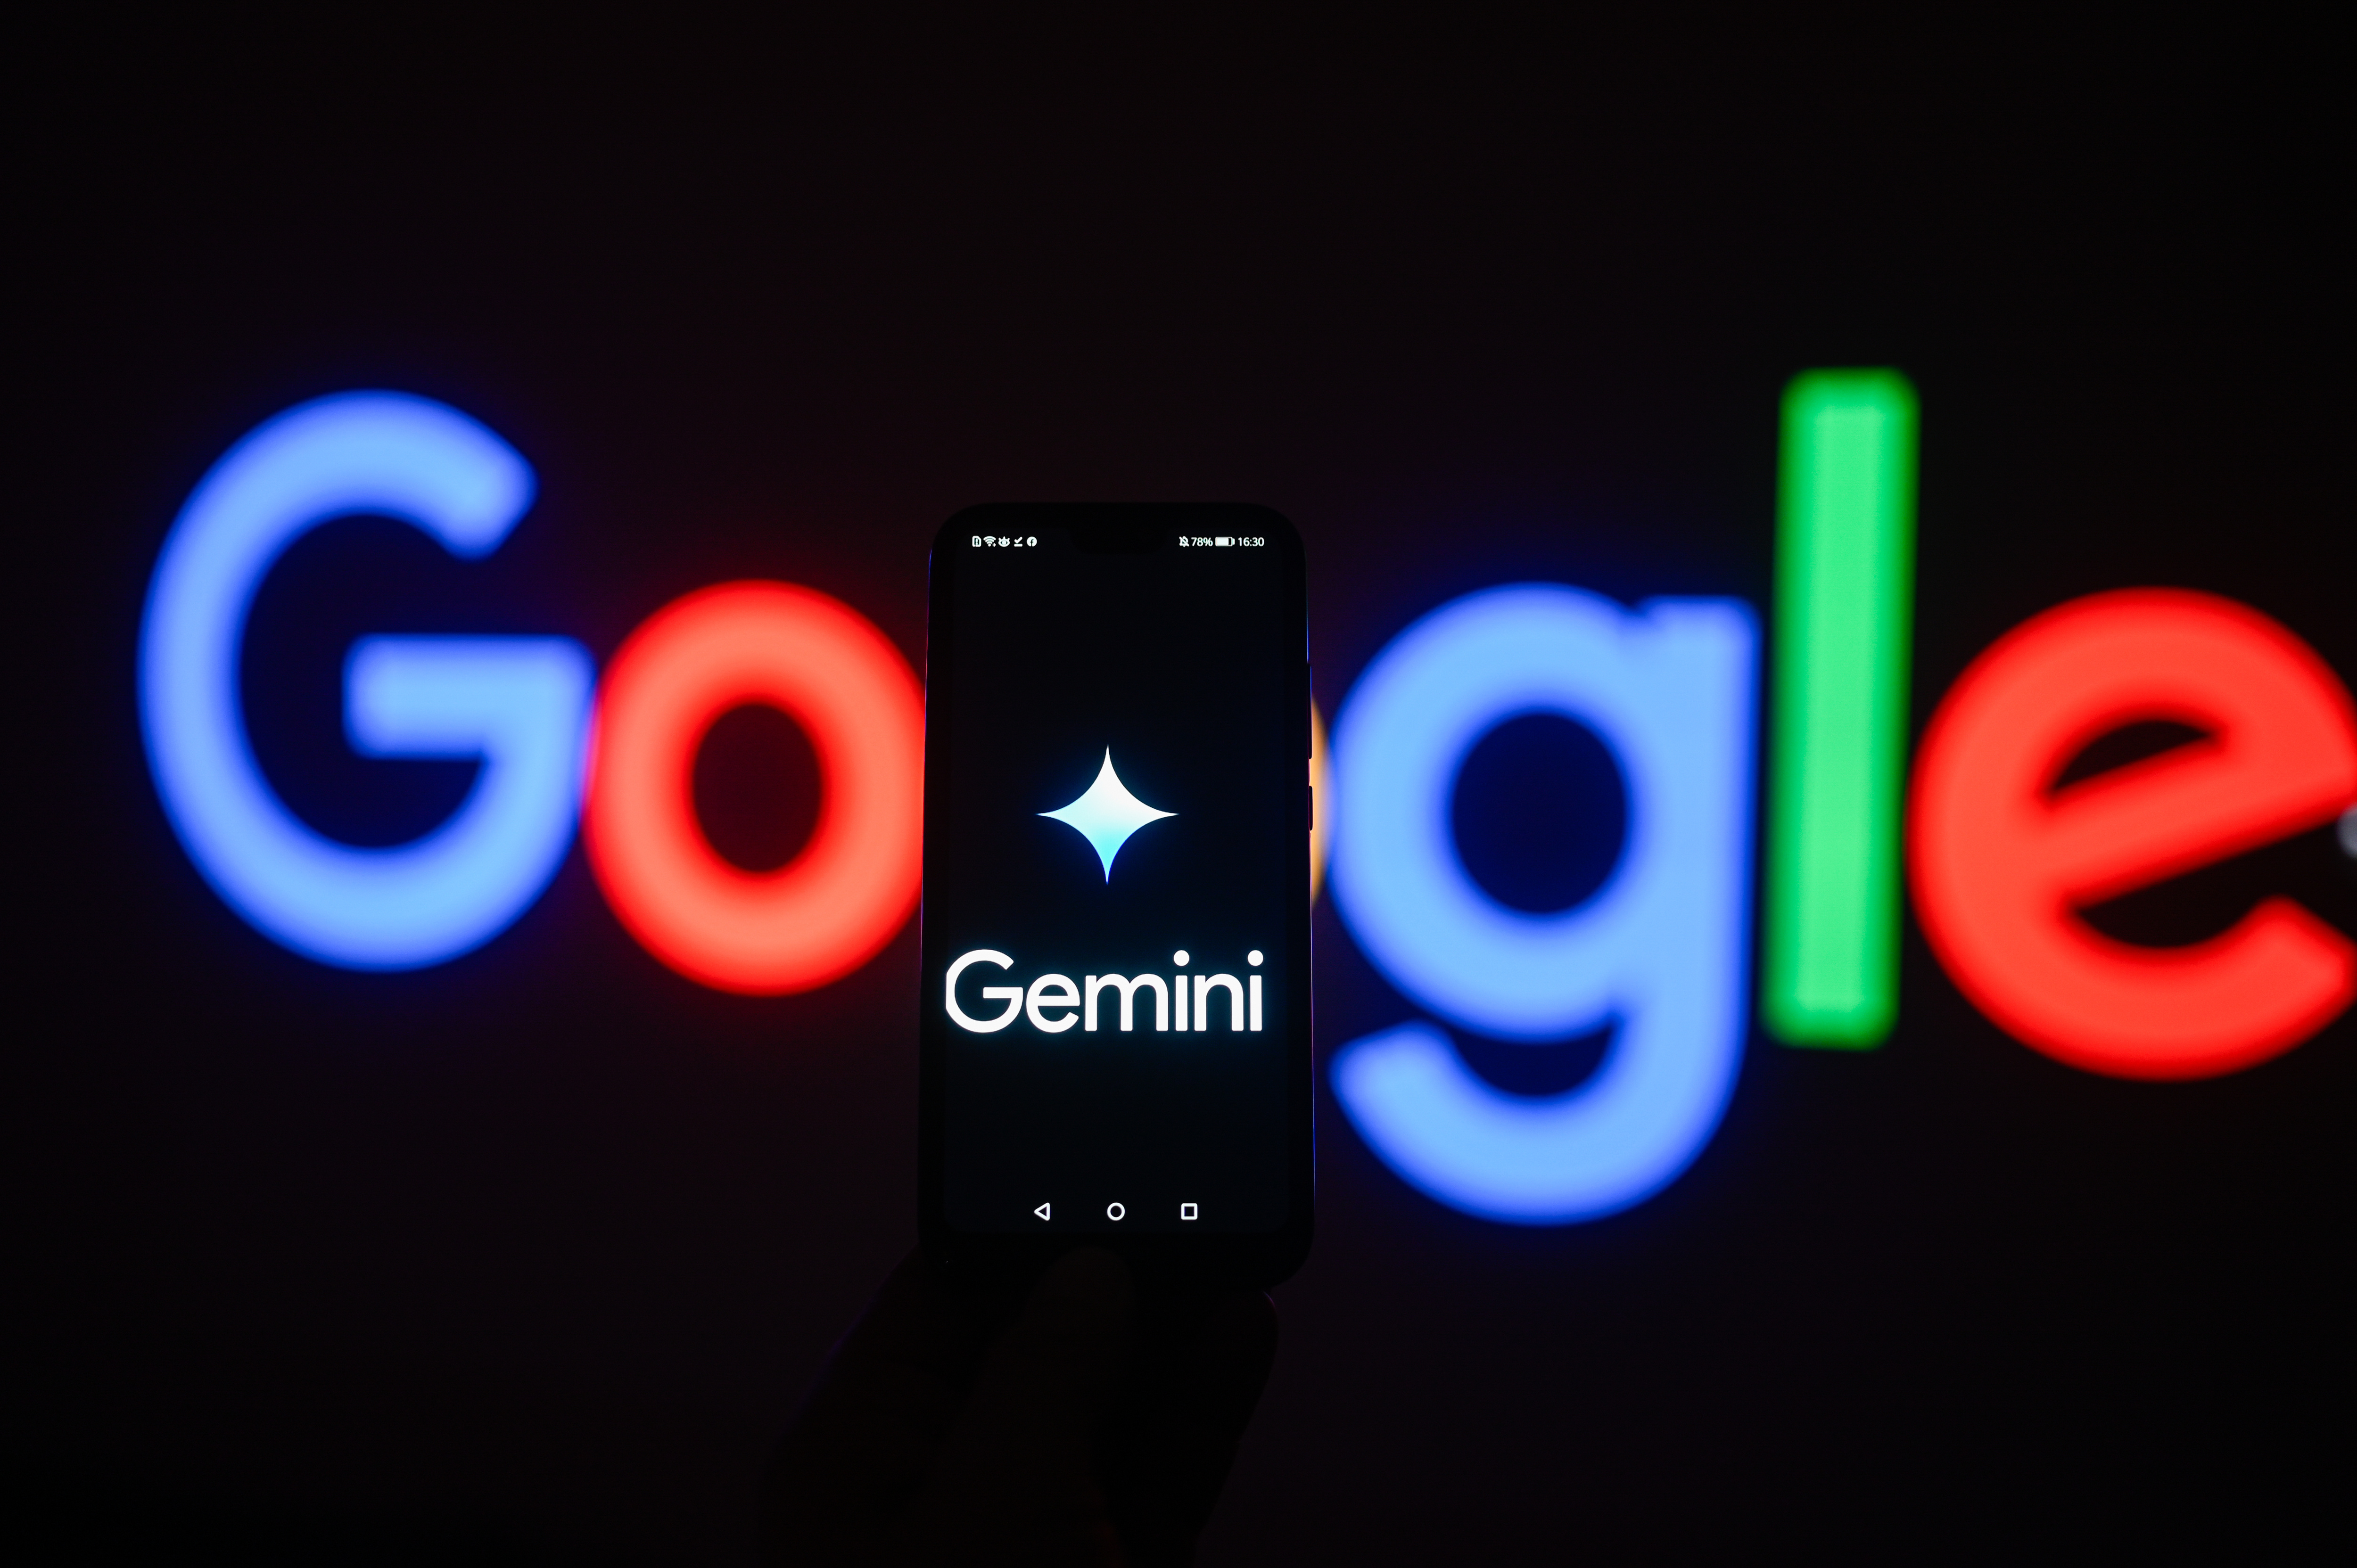 Développeurs, vous voulez essayer Google Gemini ? Attention à vos données